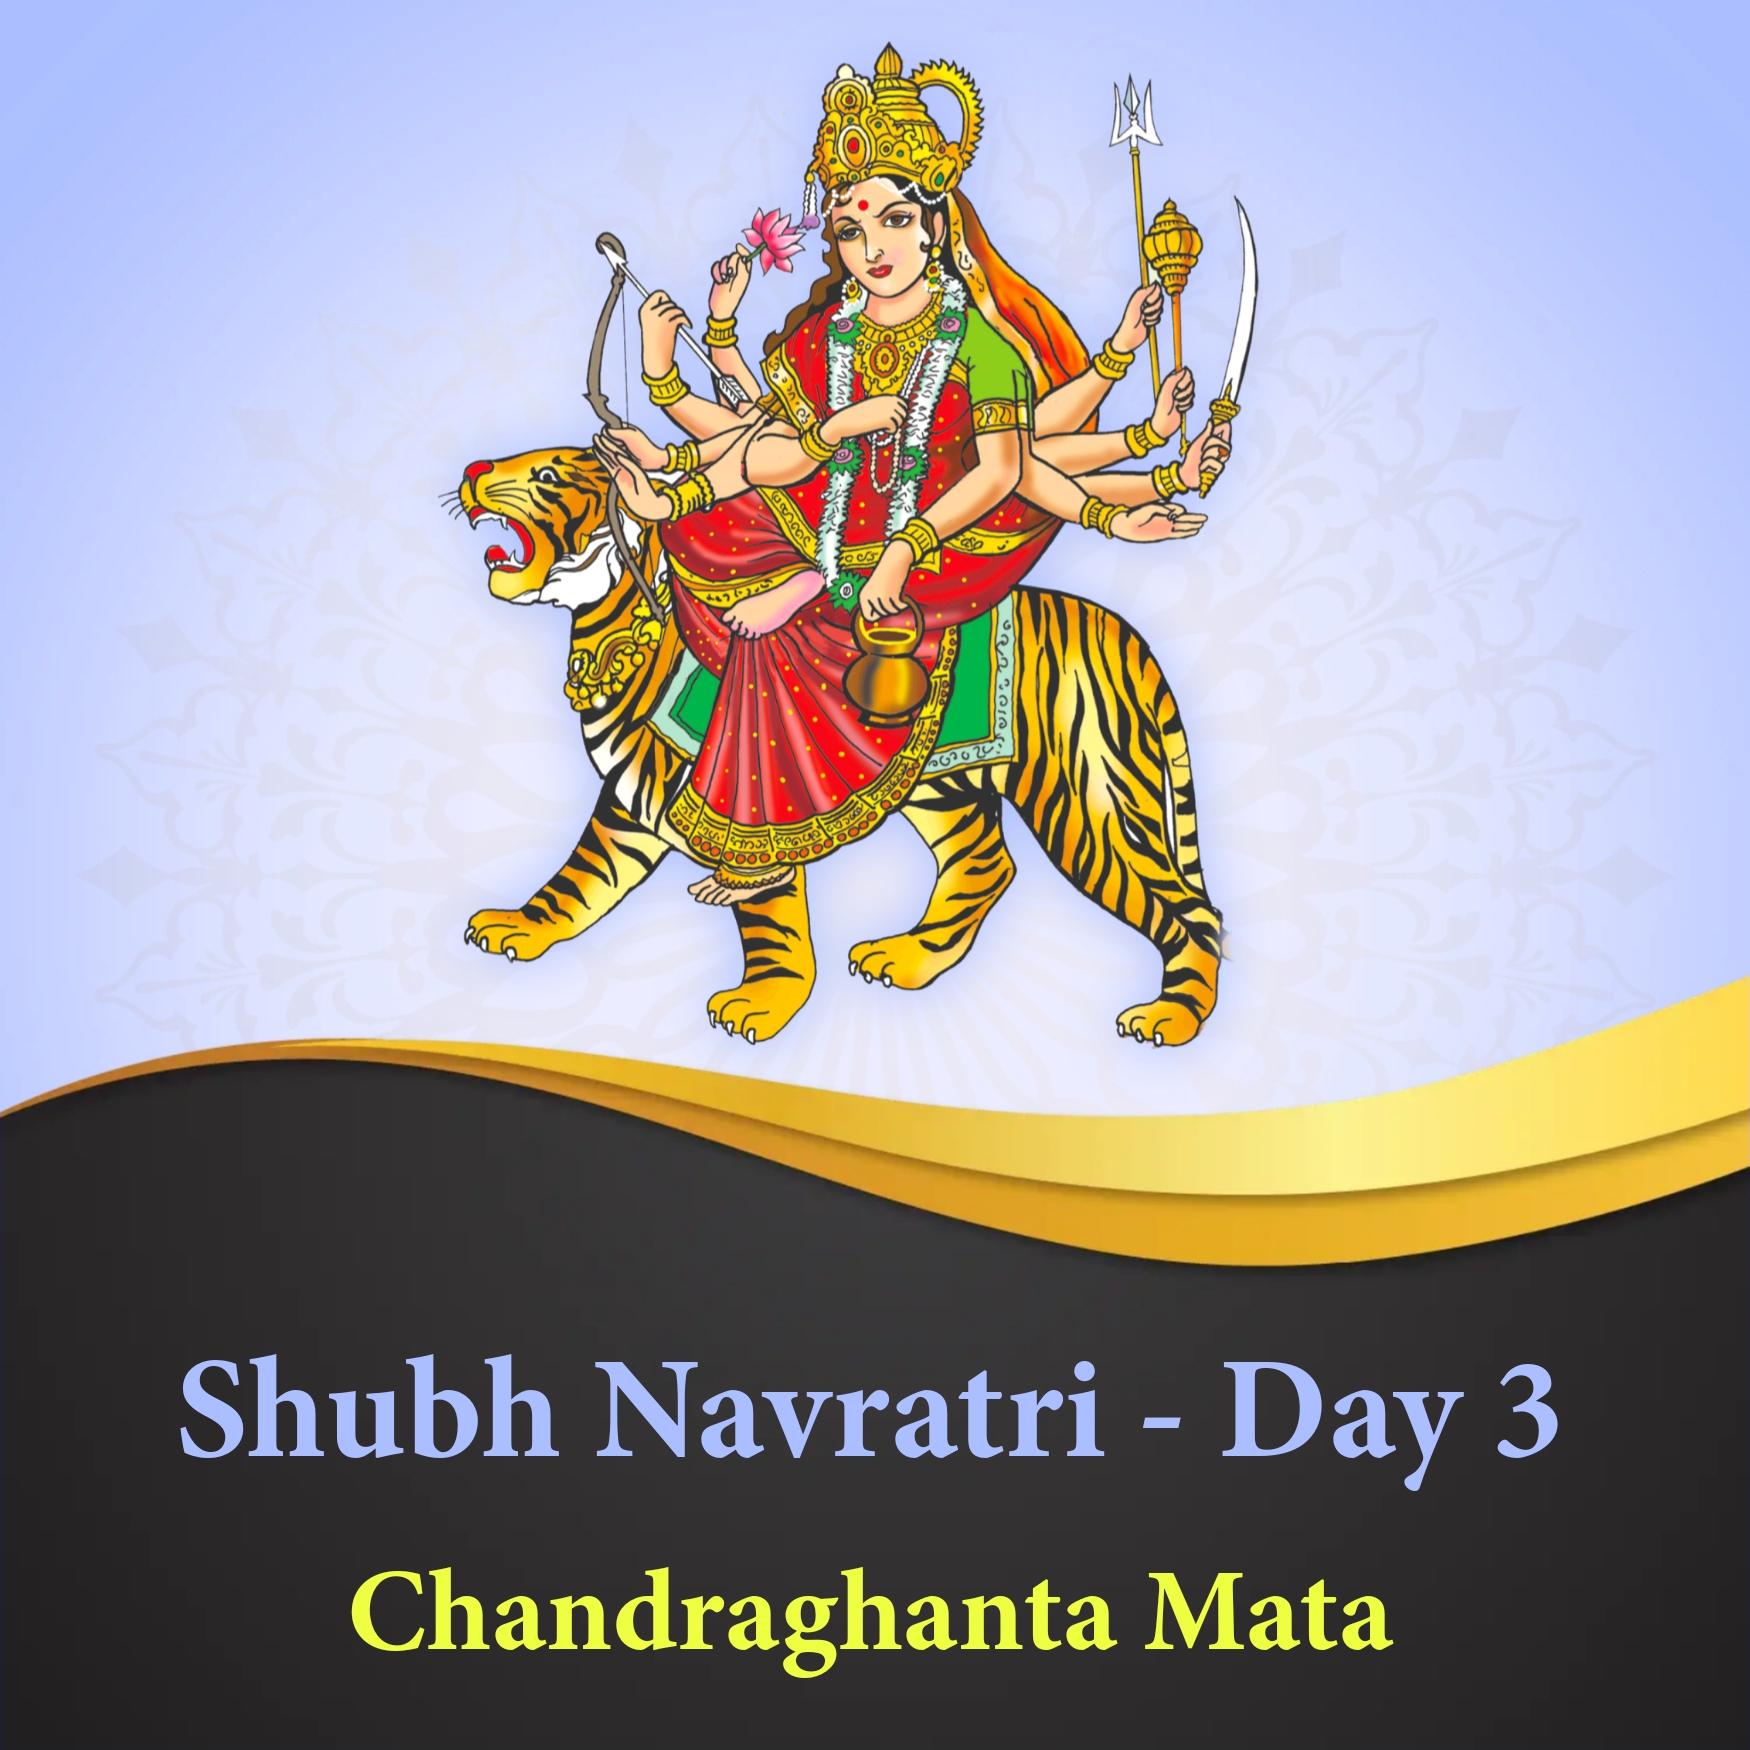 Shubh Navratri Day 3 Chandarghanta Mata Images